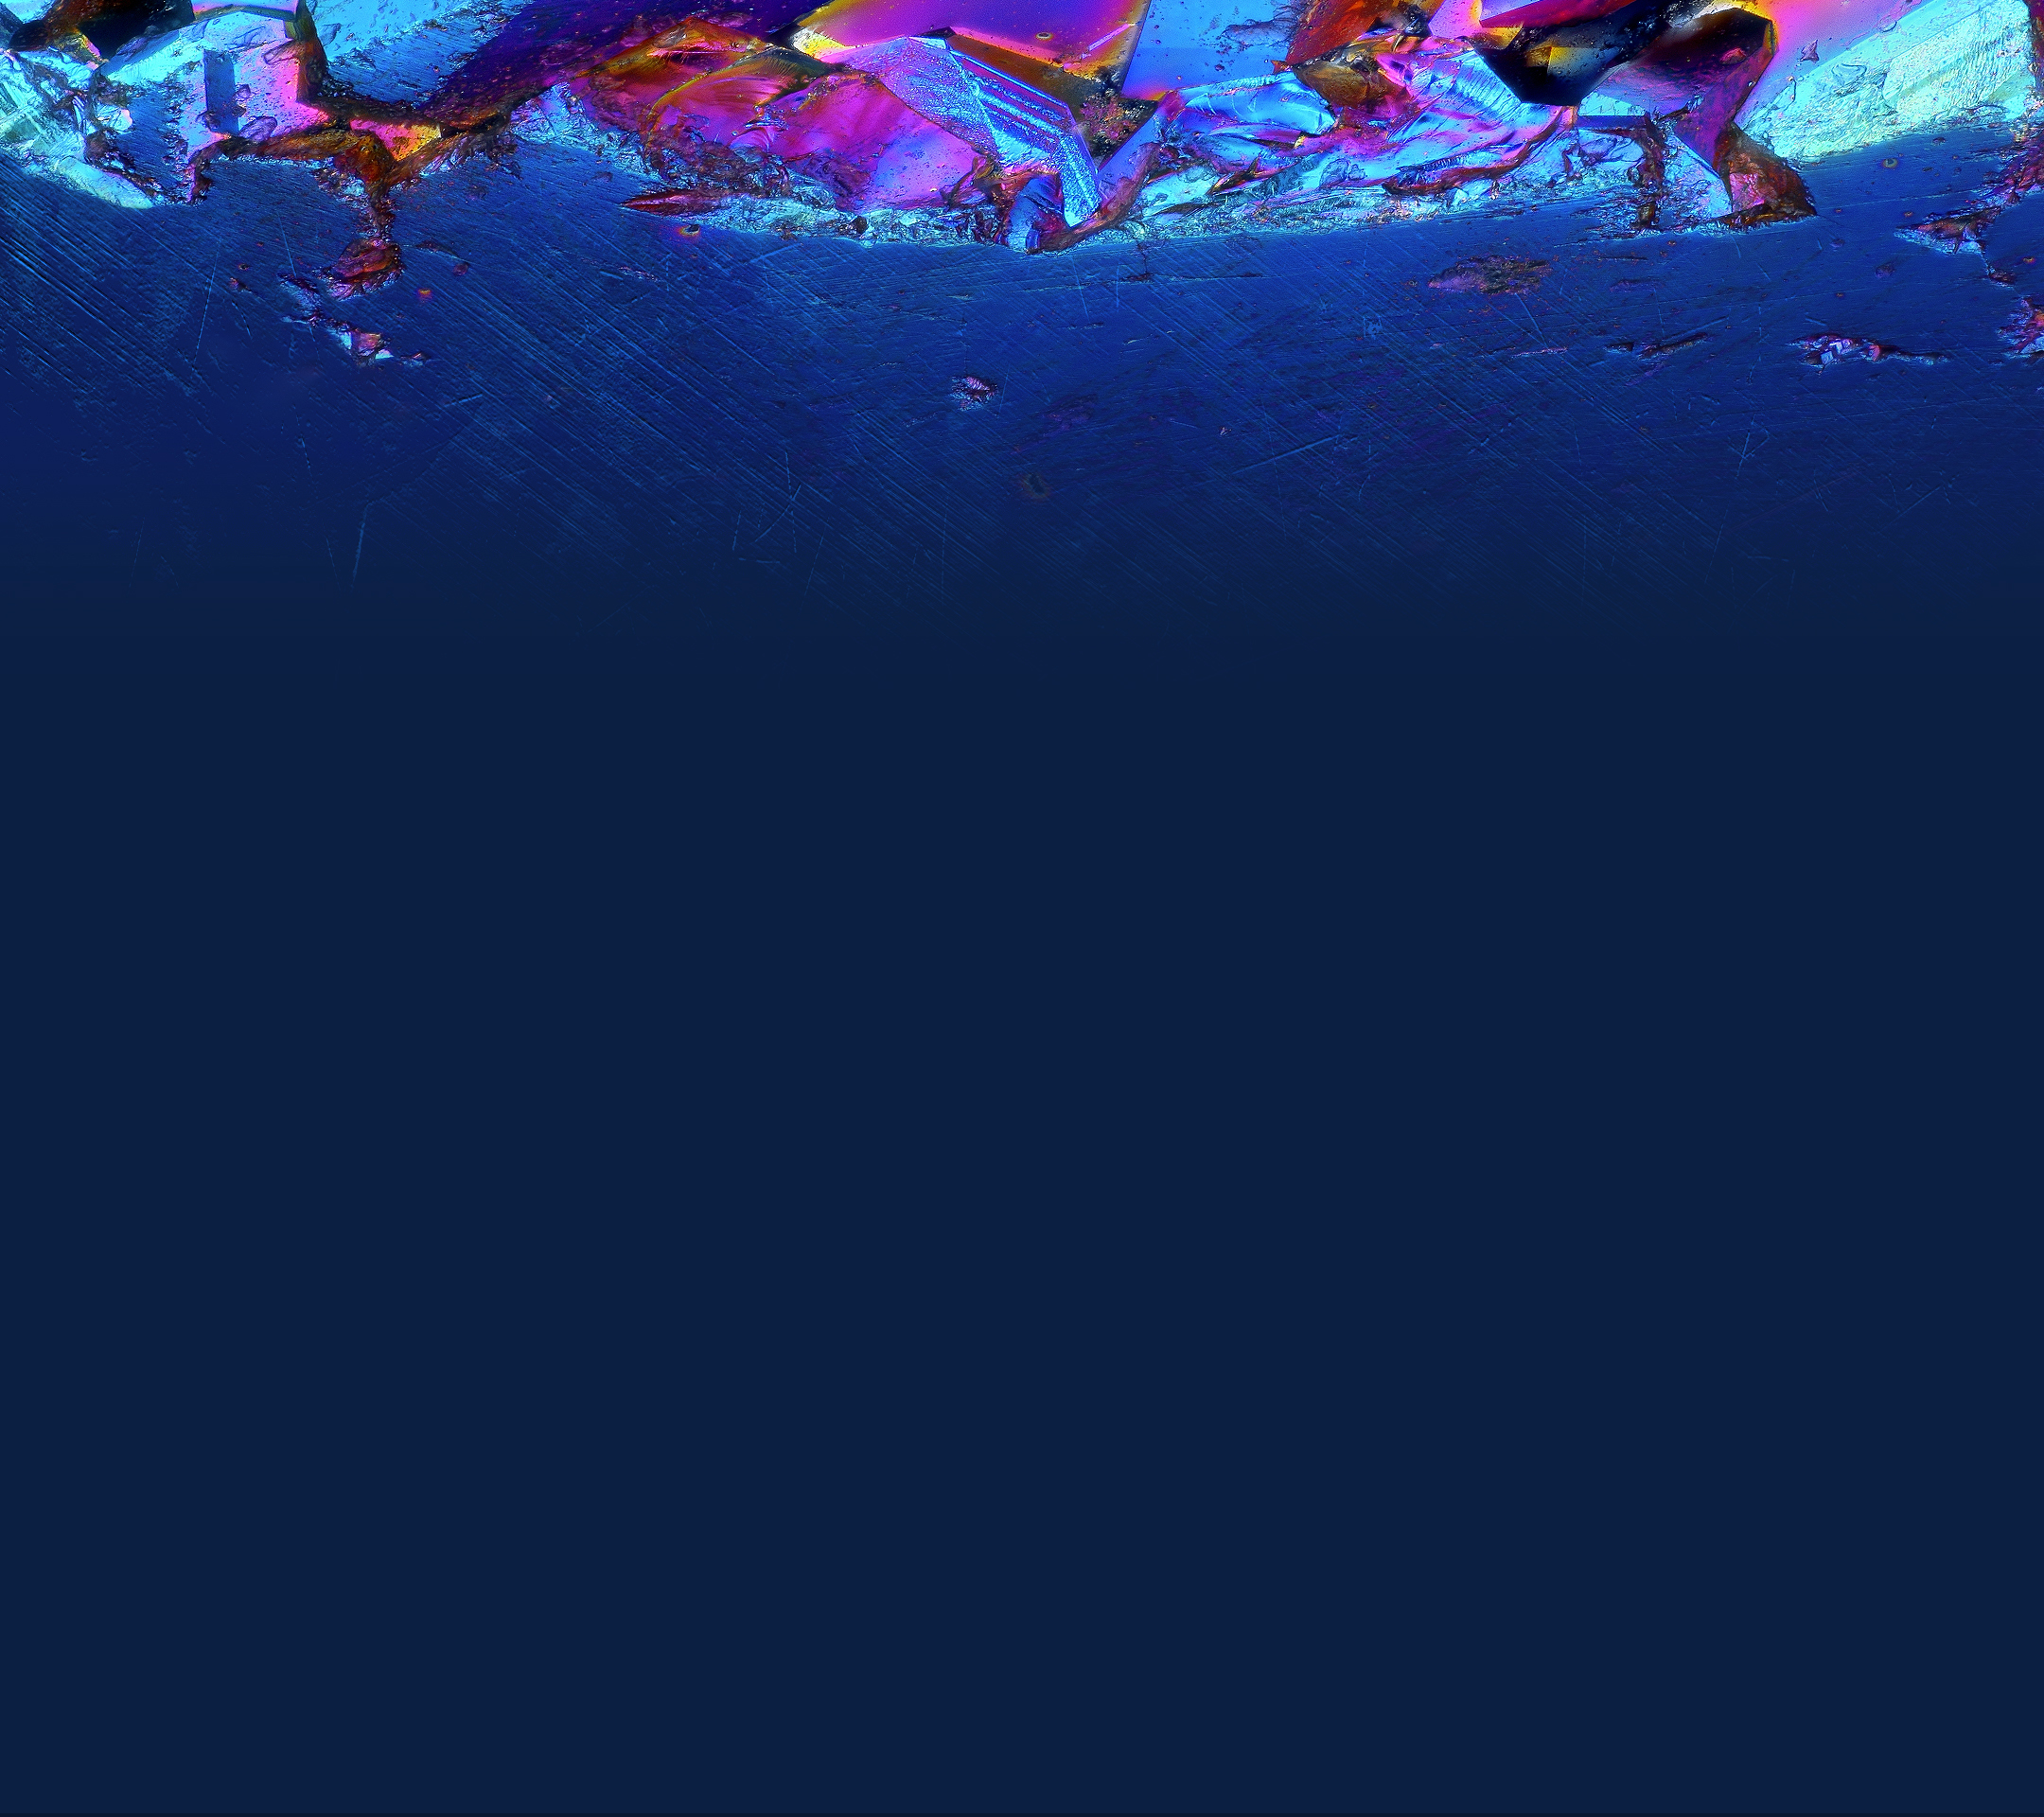 アルカテル壁紙,青い,水,水中,海洋,エレクトリックブルー